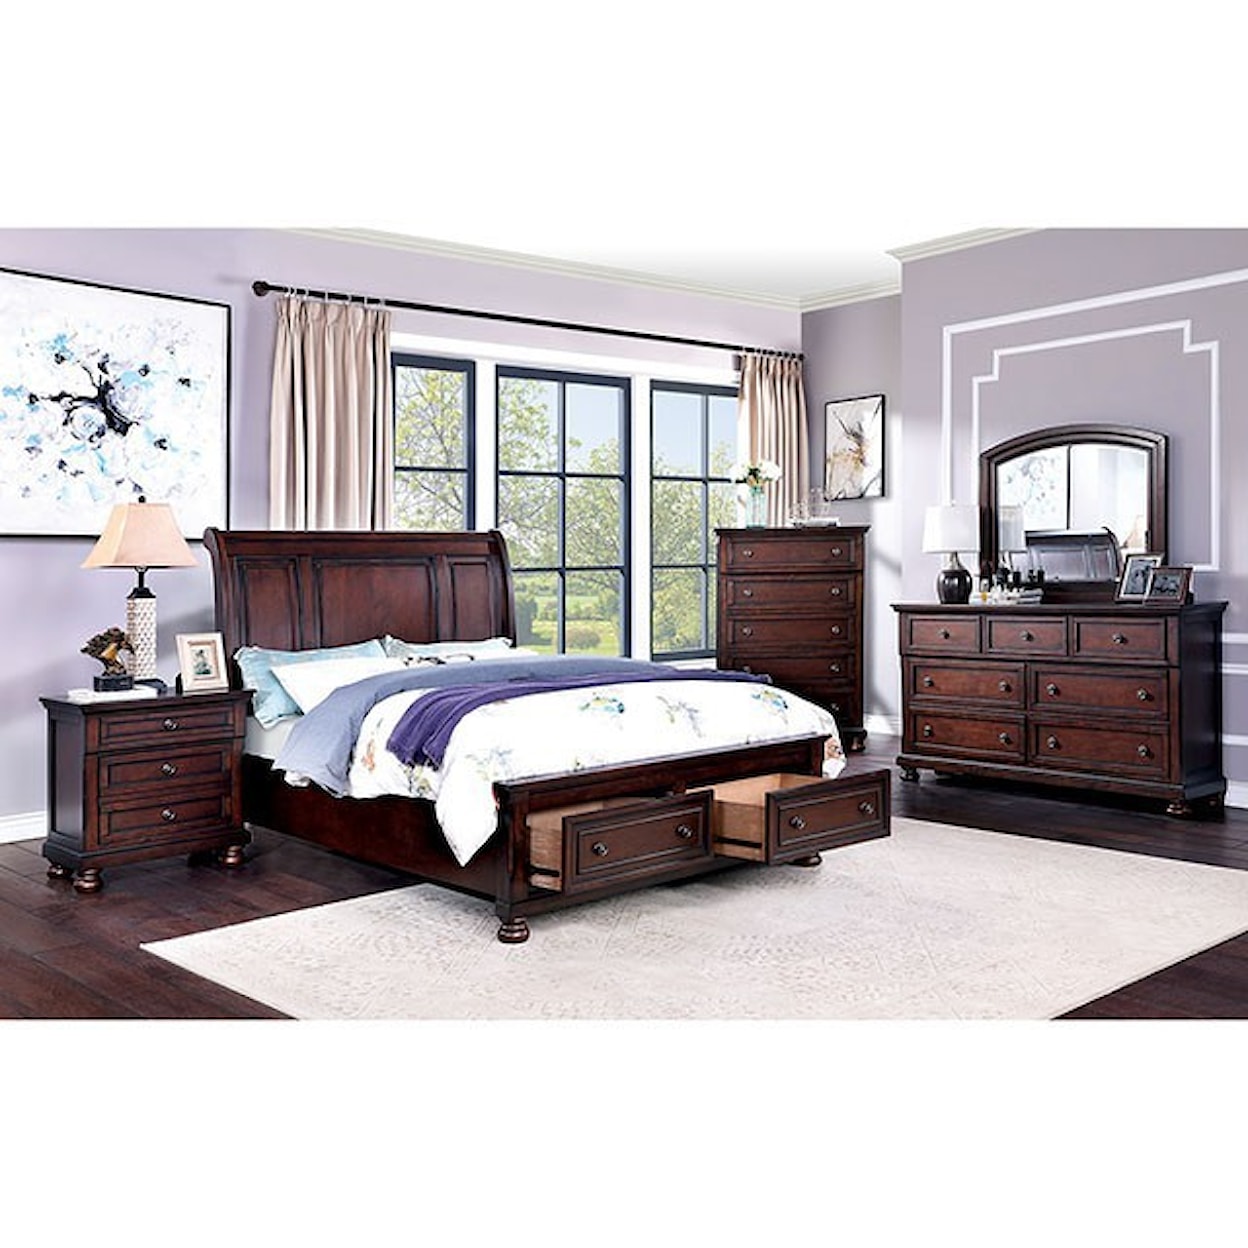 Furniture of America Wells Queen Bedroom Group 